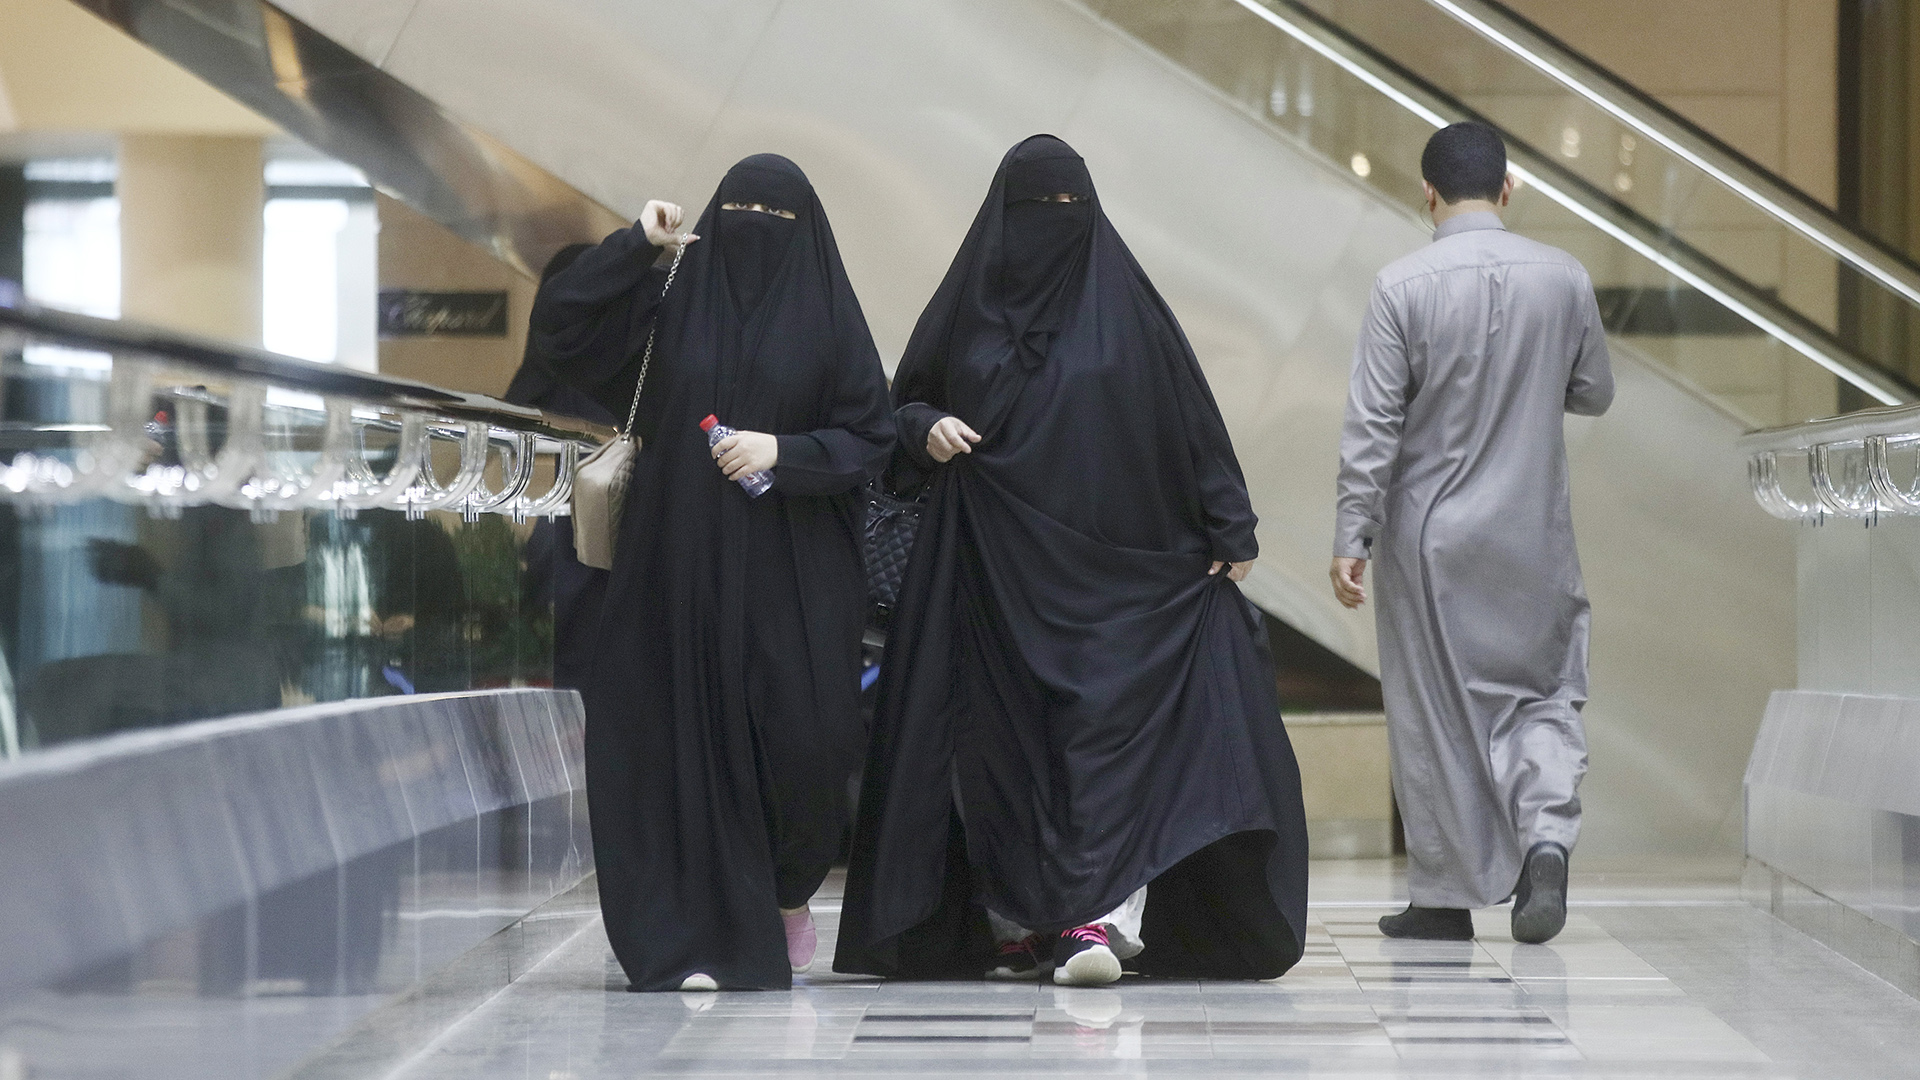 Frauen in traditioneller saudi-arabischer Kleidung gehen durch ein Einkaufszentrum in Riad.